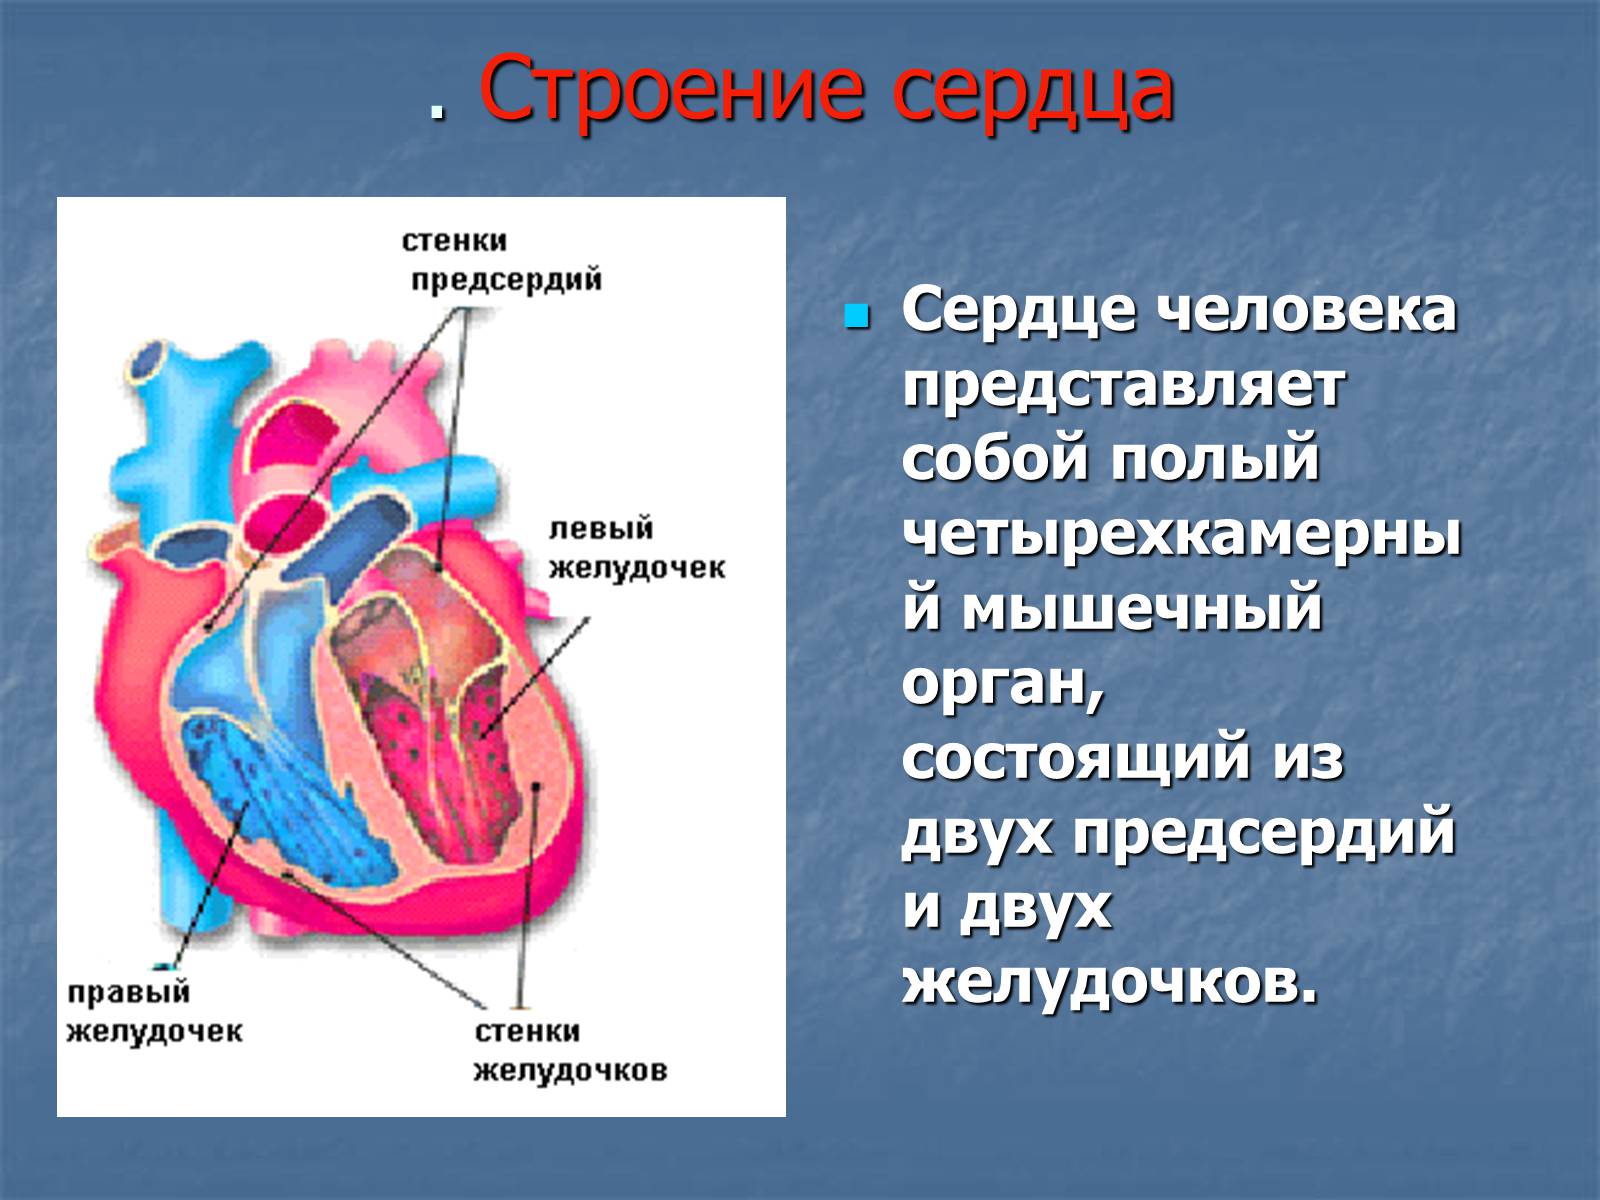 Правое предсердие отделено от правого желудочка. Строение желудочков сердца анатомия. 2 Желудочка и 2 предсердия. Сердце анатомия желудочки и предсердия. Строение сердца человека желудочки и предсердия.